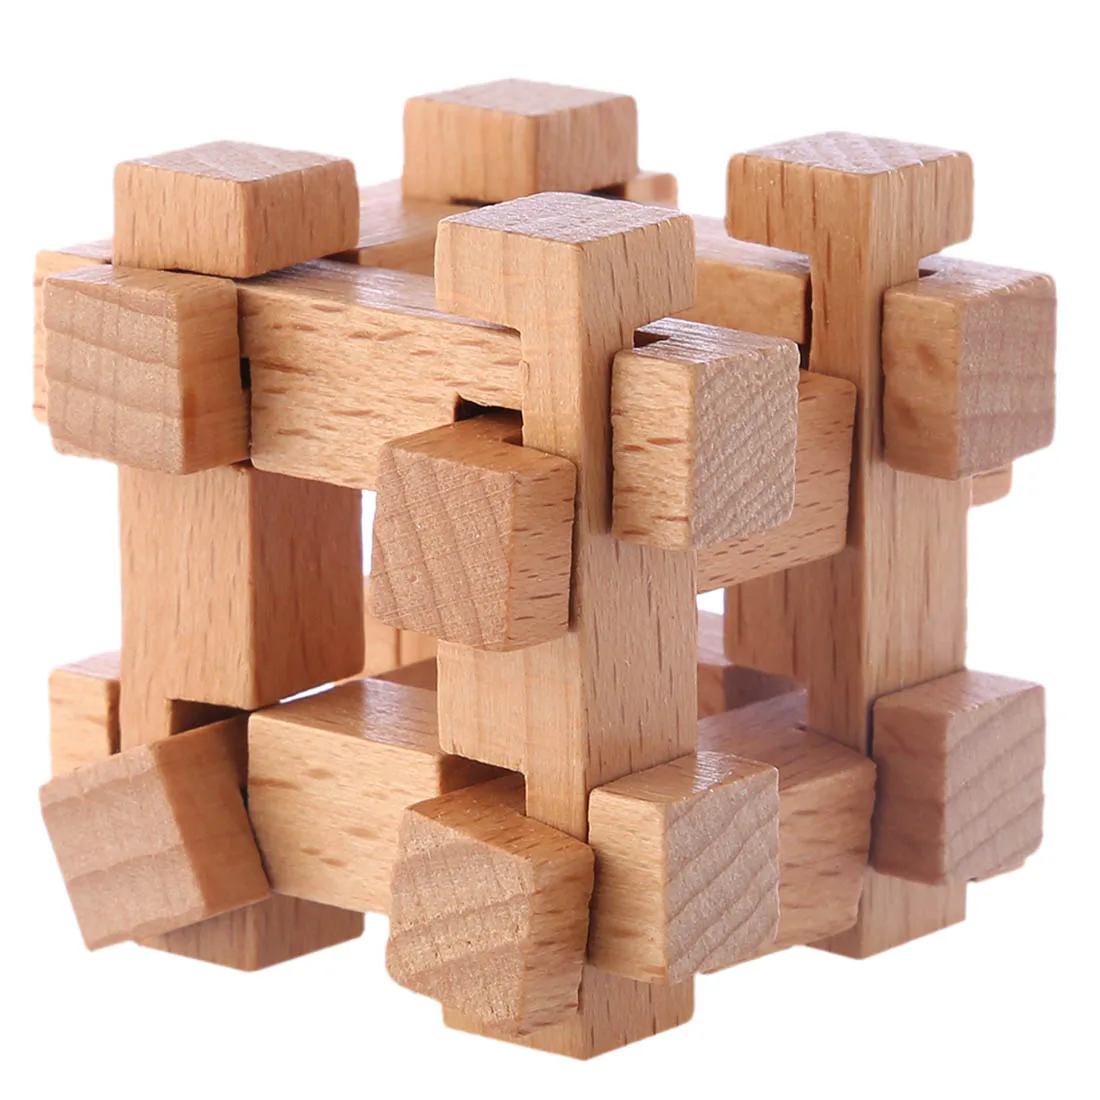 6 шт. деревянный замок Kongming металлическая проволока паззл кольцо головоломка классическая интеллектуальная игрушка набор